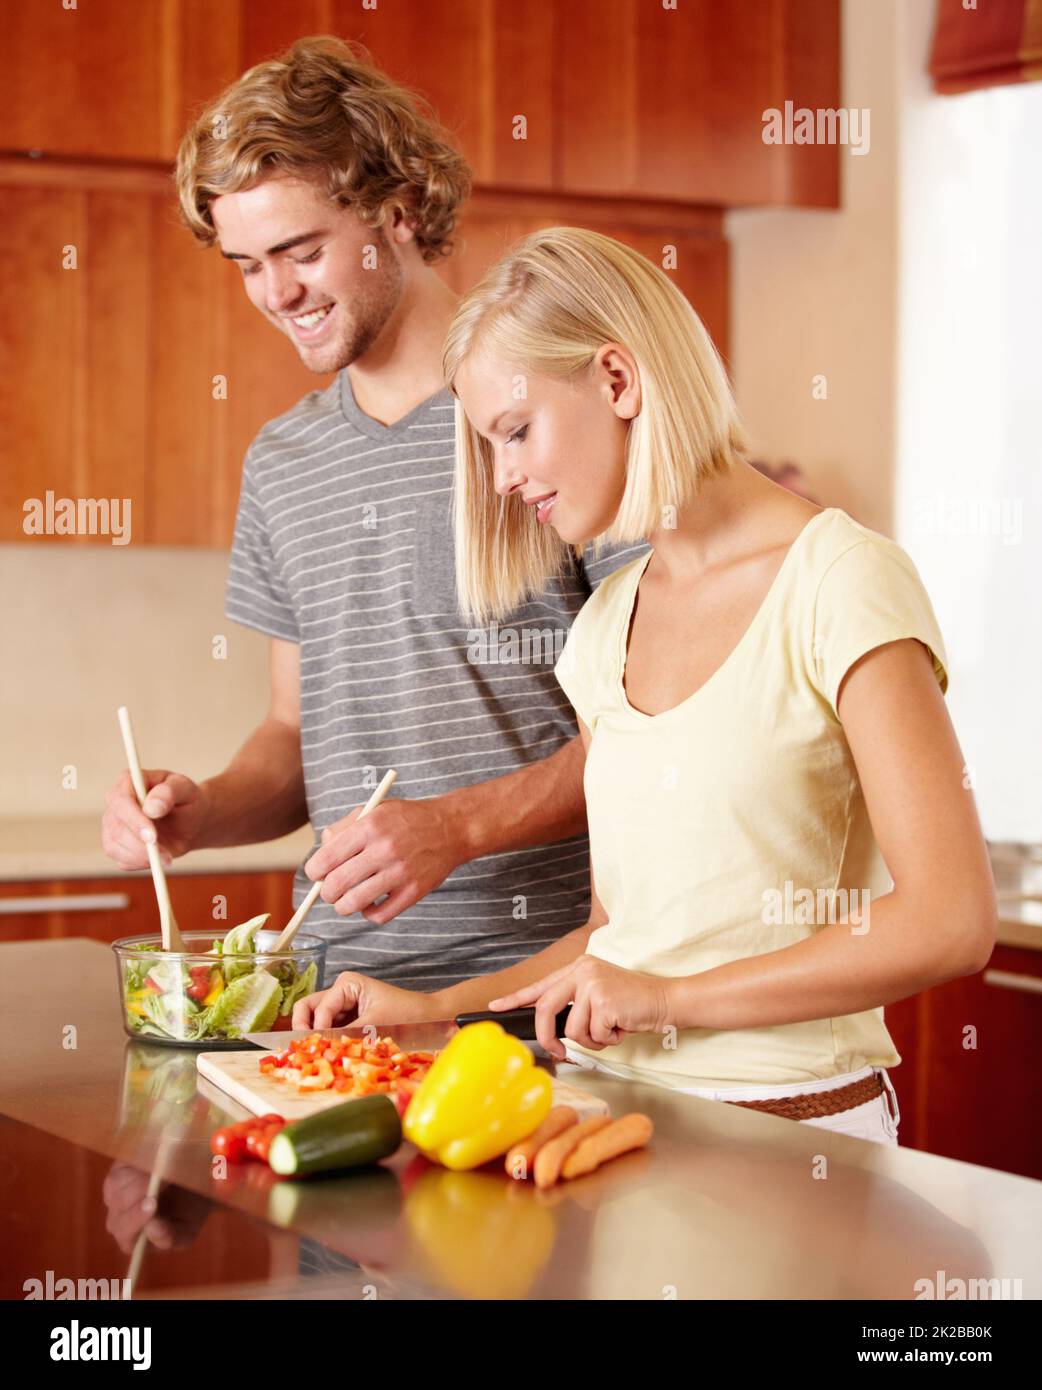 Salat machen. Ein junges Paar bereitet in der Küche etwas zu. Stockfoto